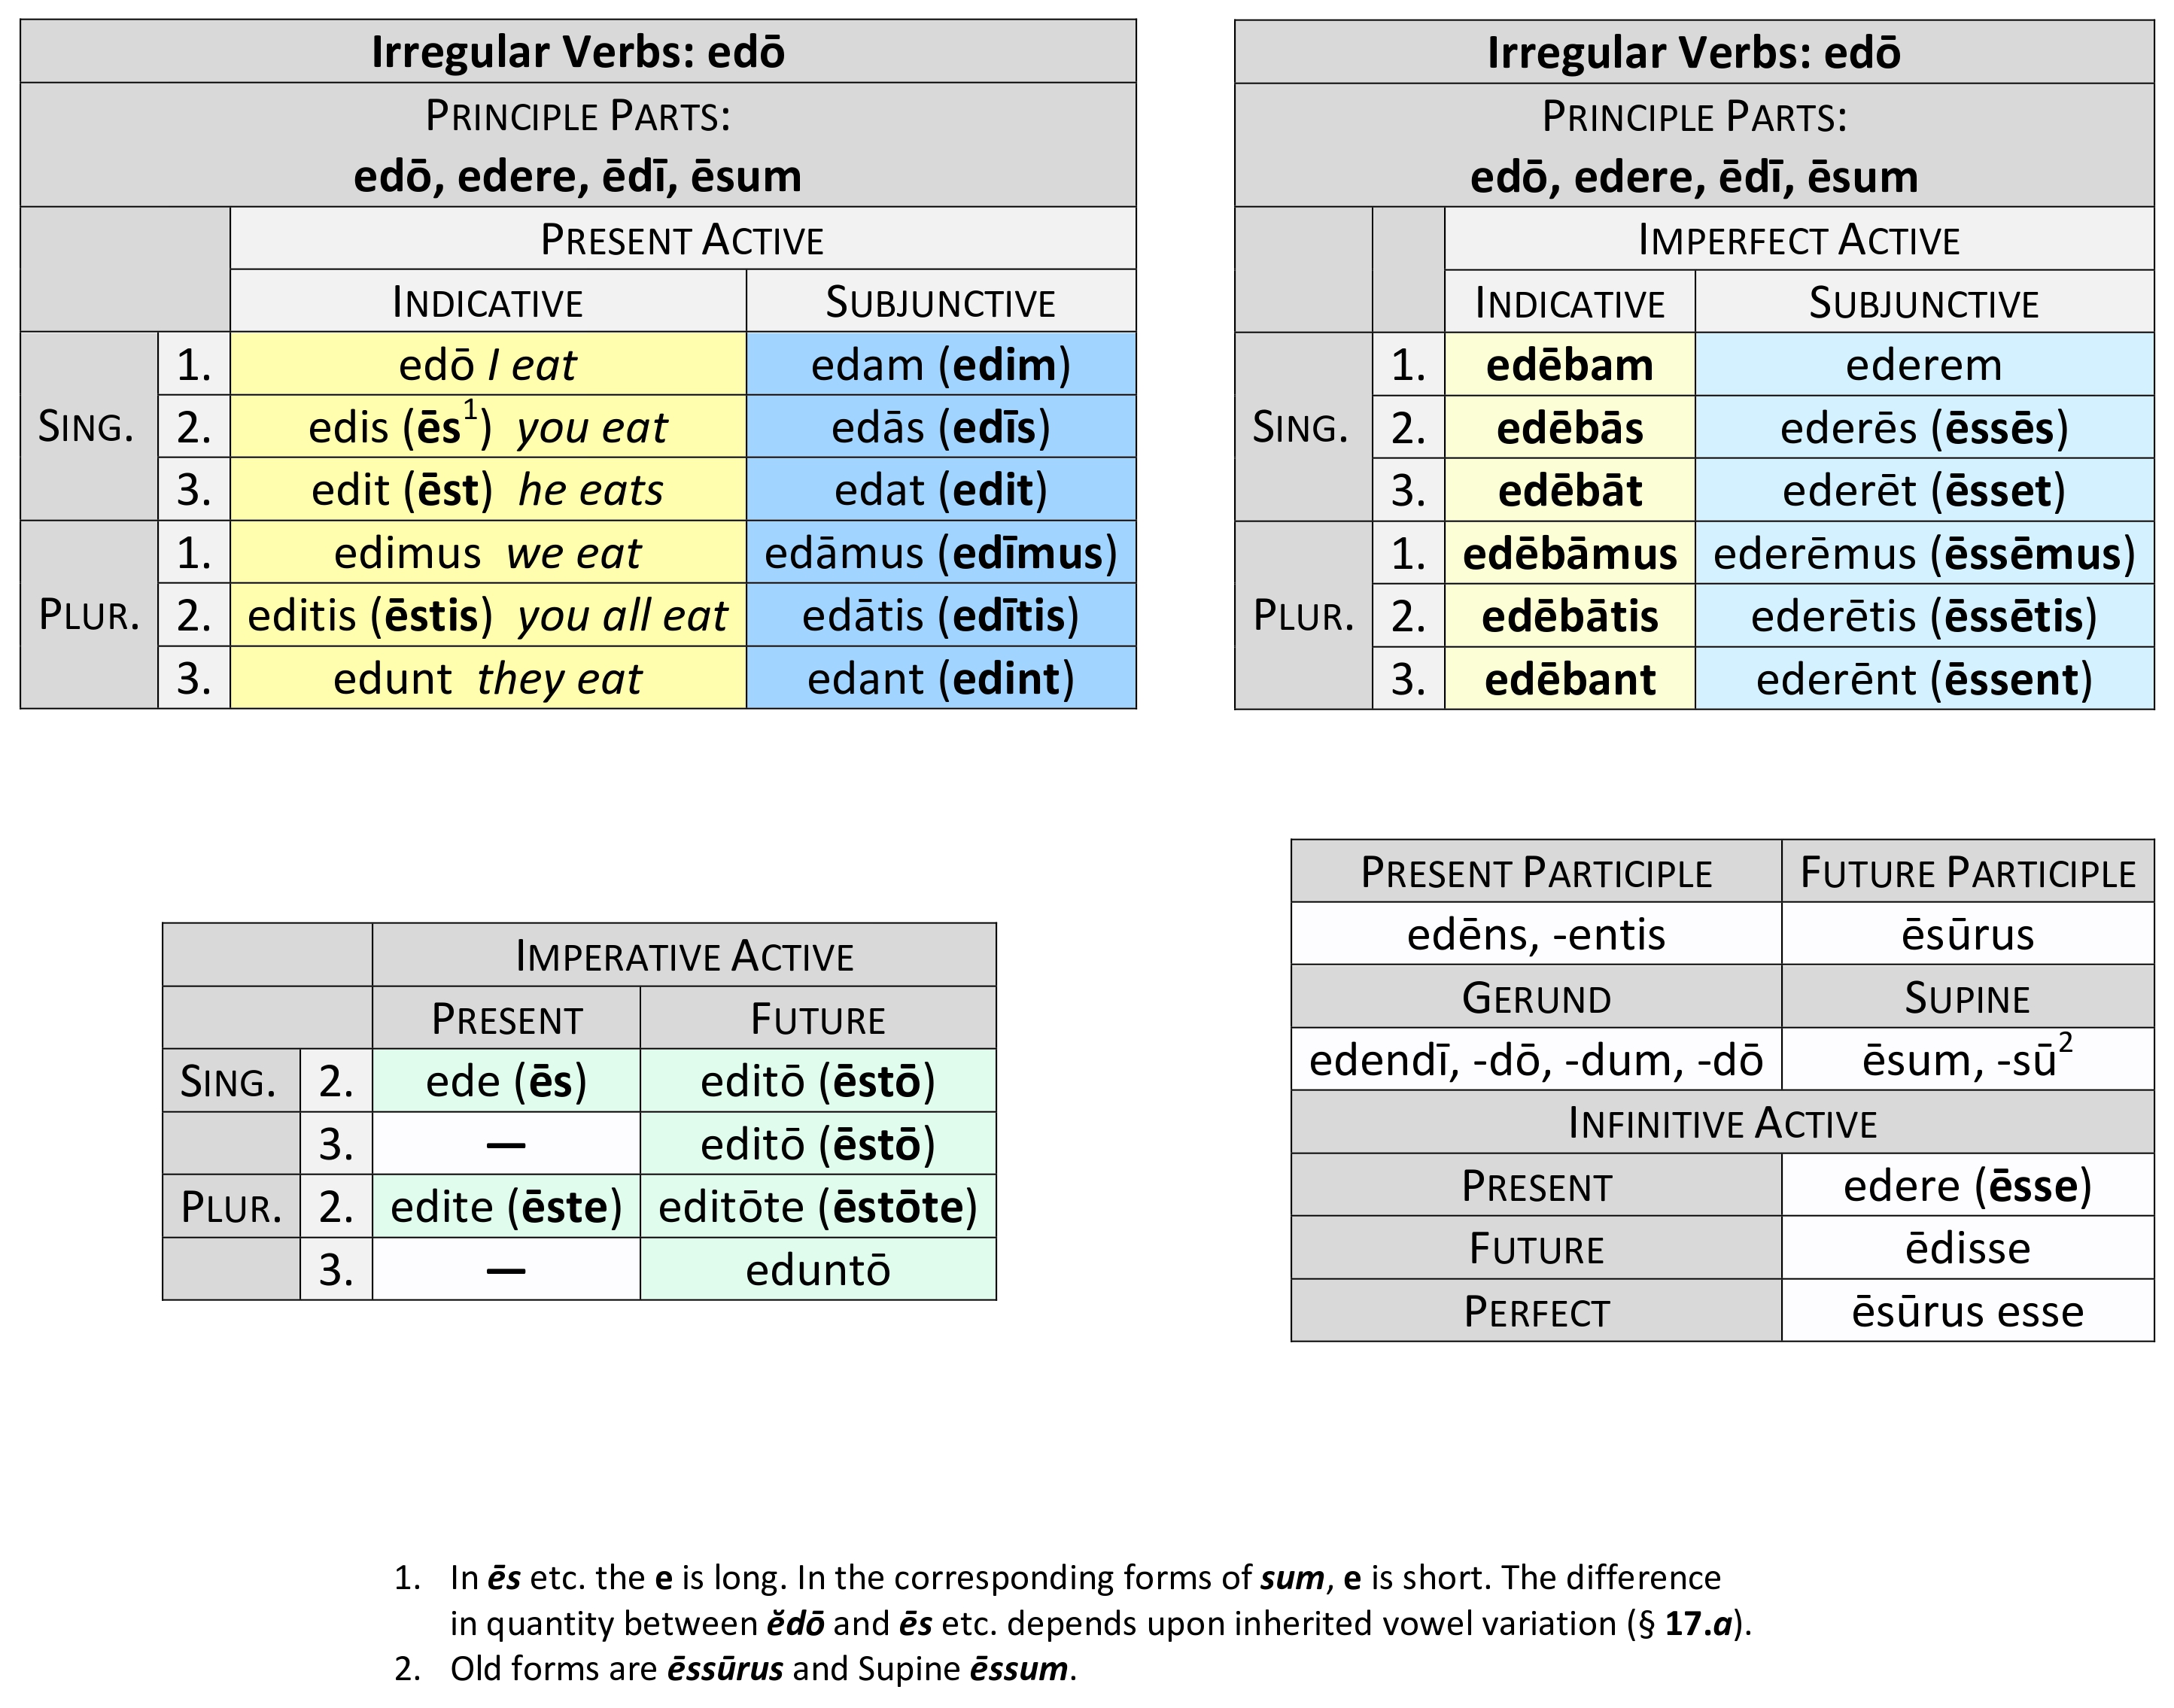 irregular verb edō present system synopsis